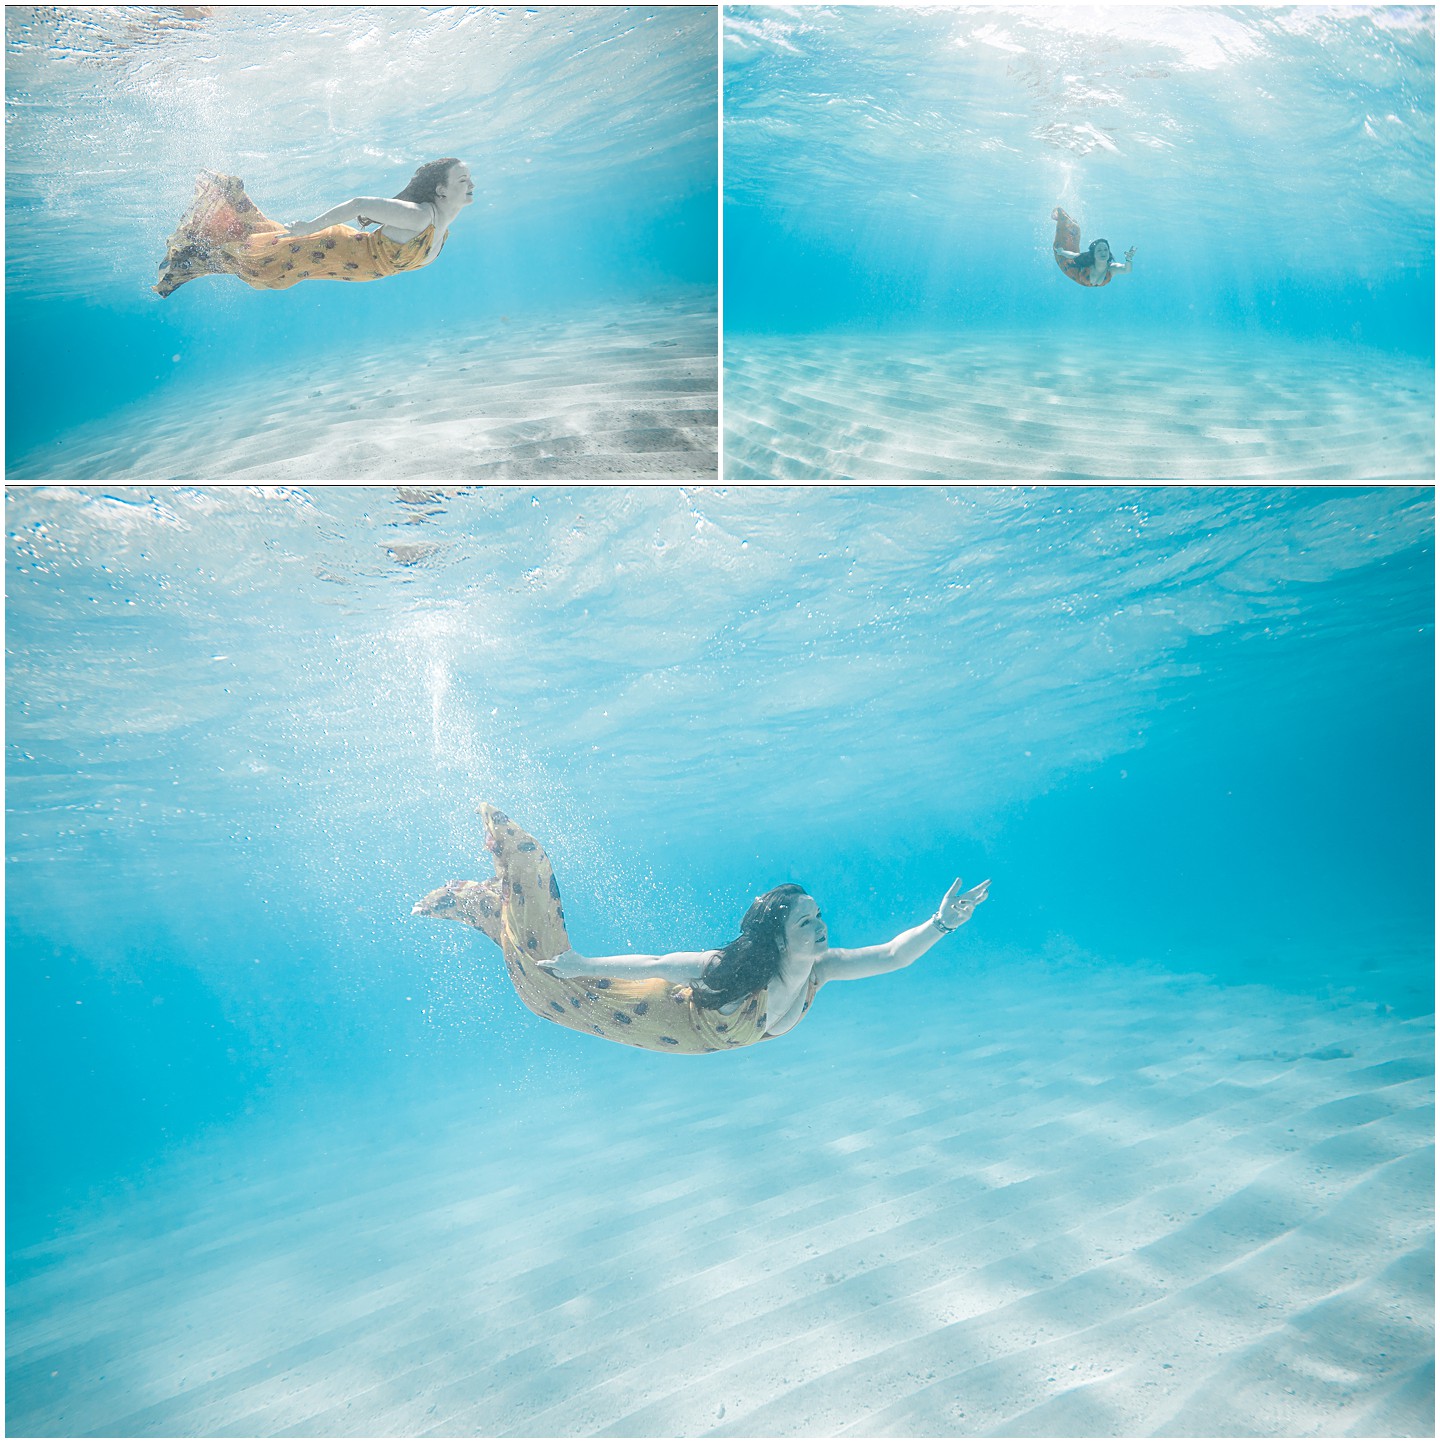 Fiji Solo Underwater Portrait Session